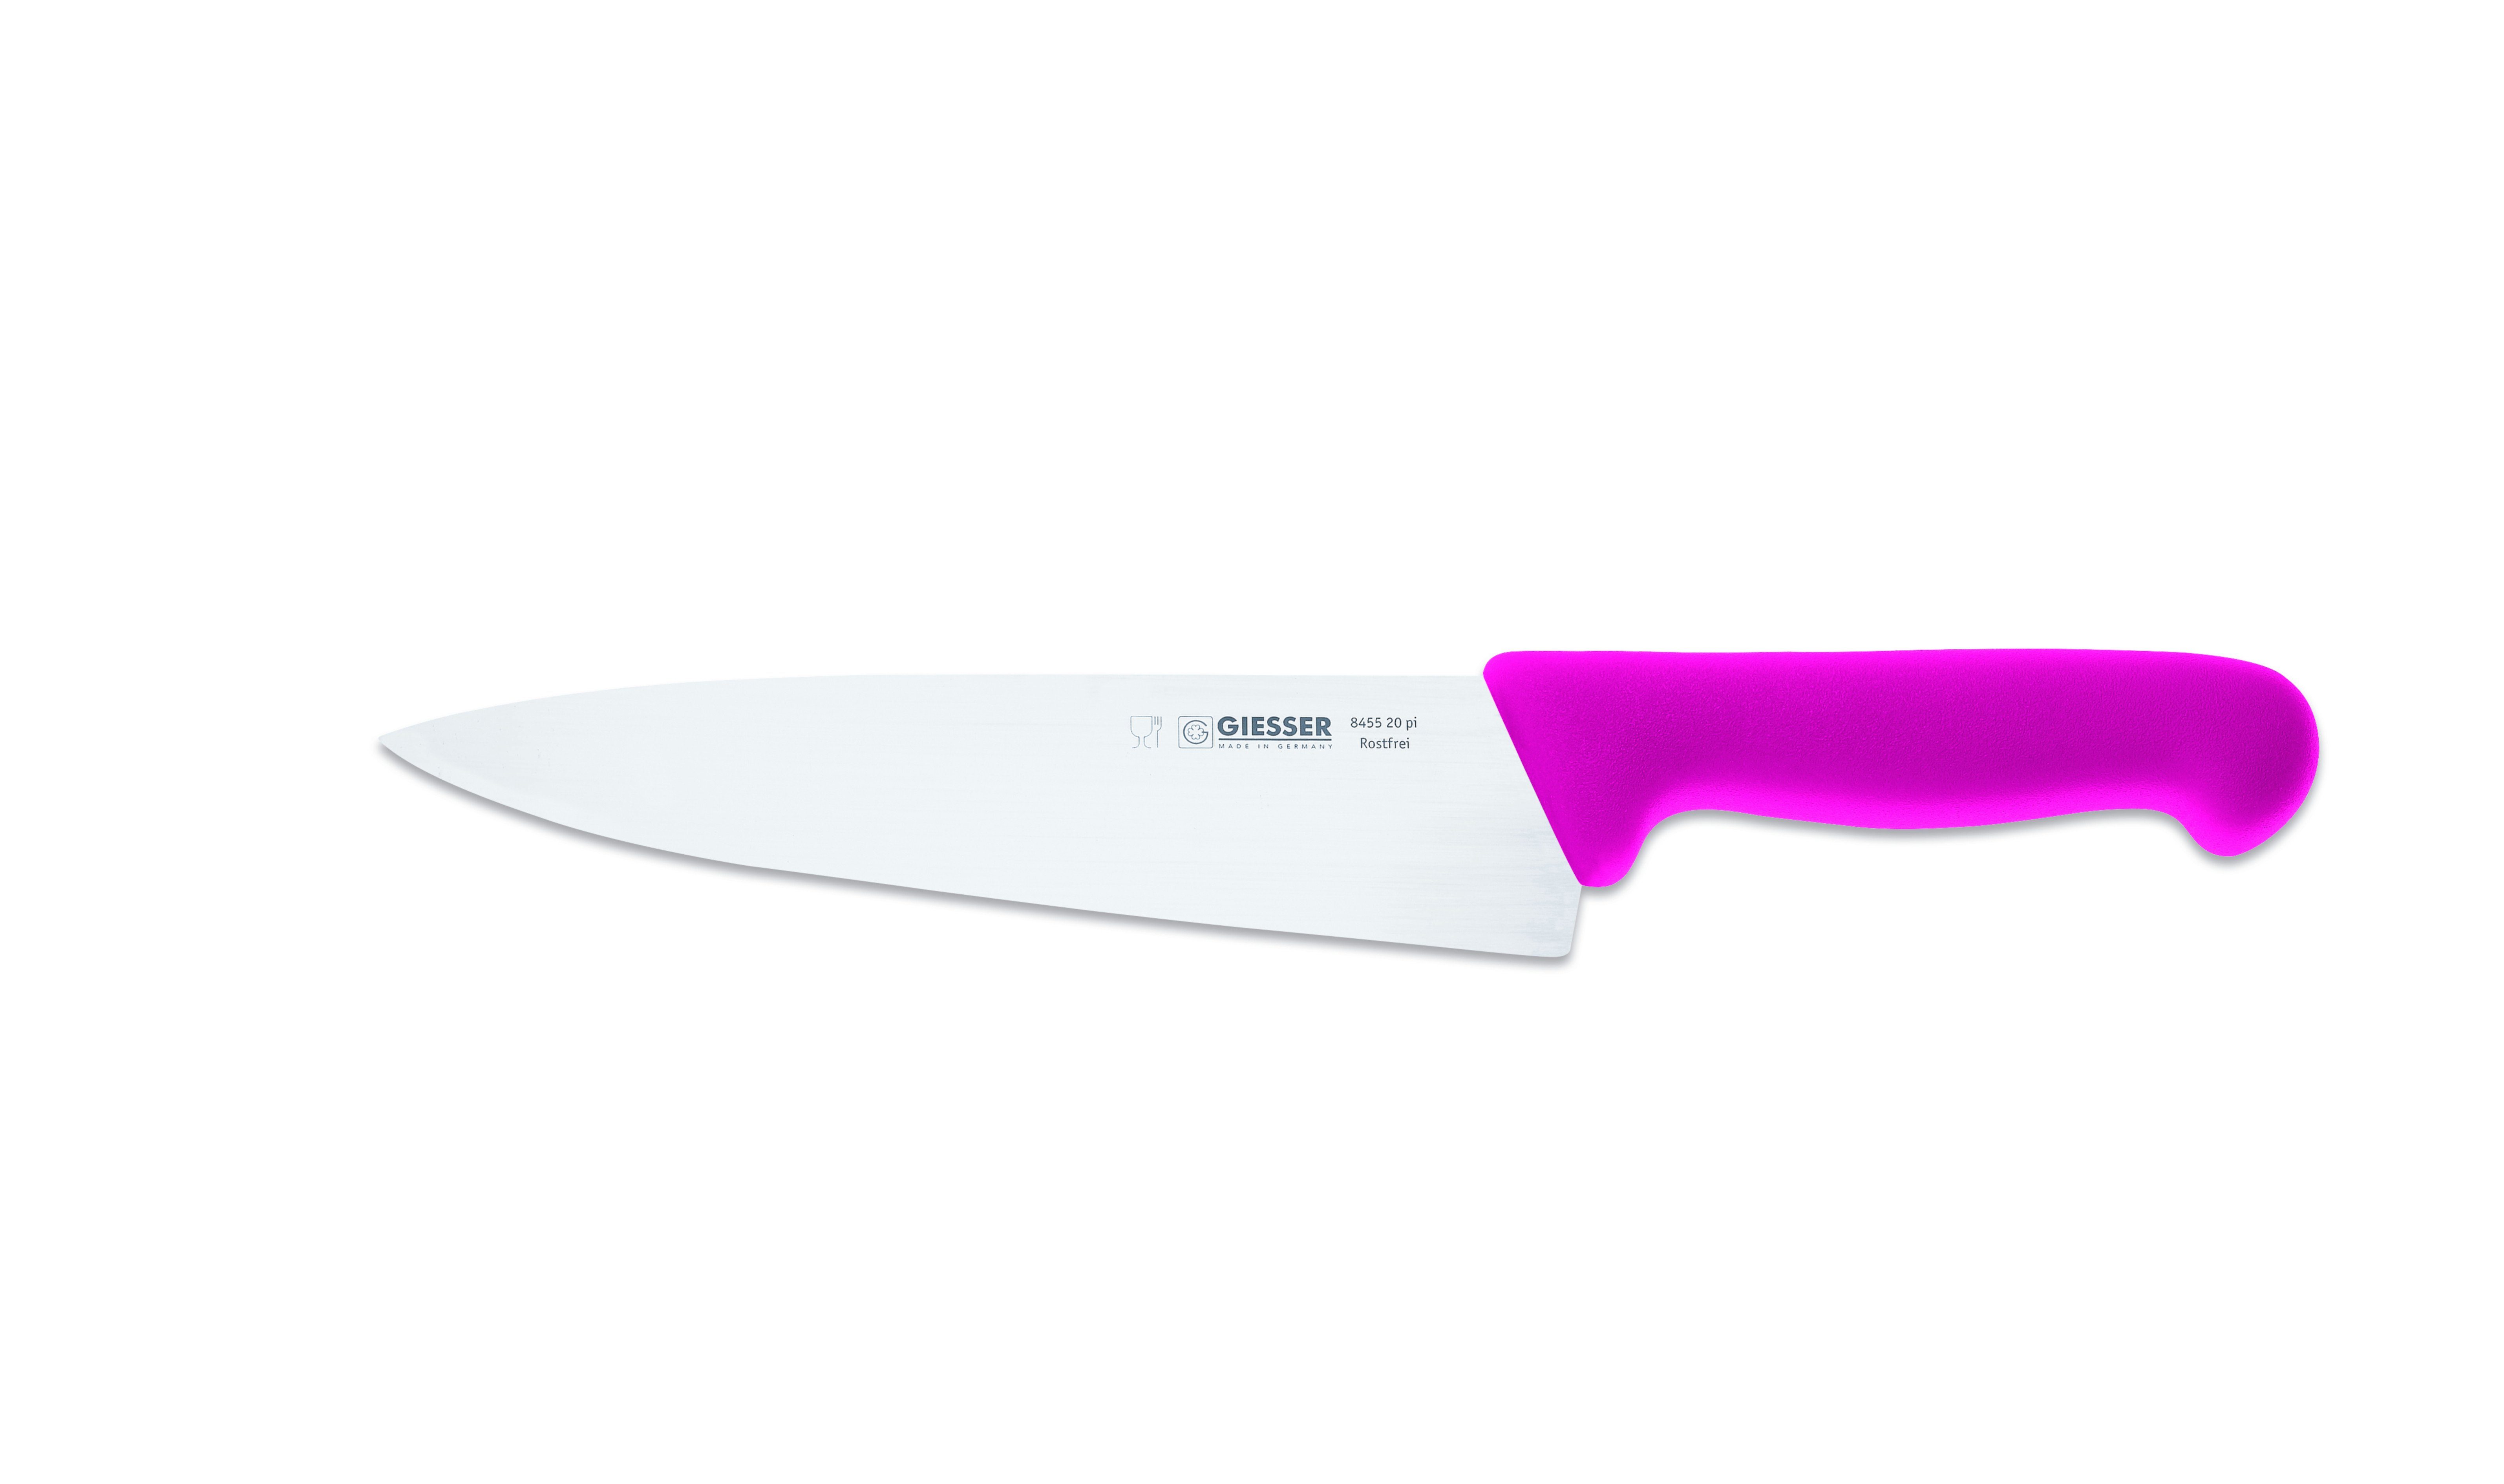 Giesser Messer Kochmesser Küchenmesser breit 8455, Rostfrei, breite Form, scharf, Handabzug, Ideal für jede Küche pink